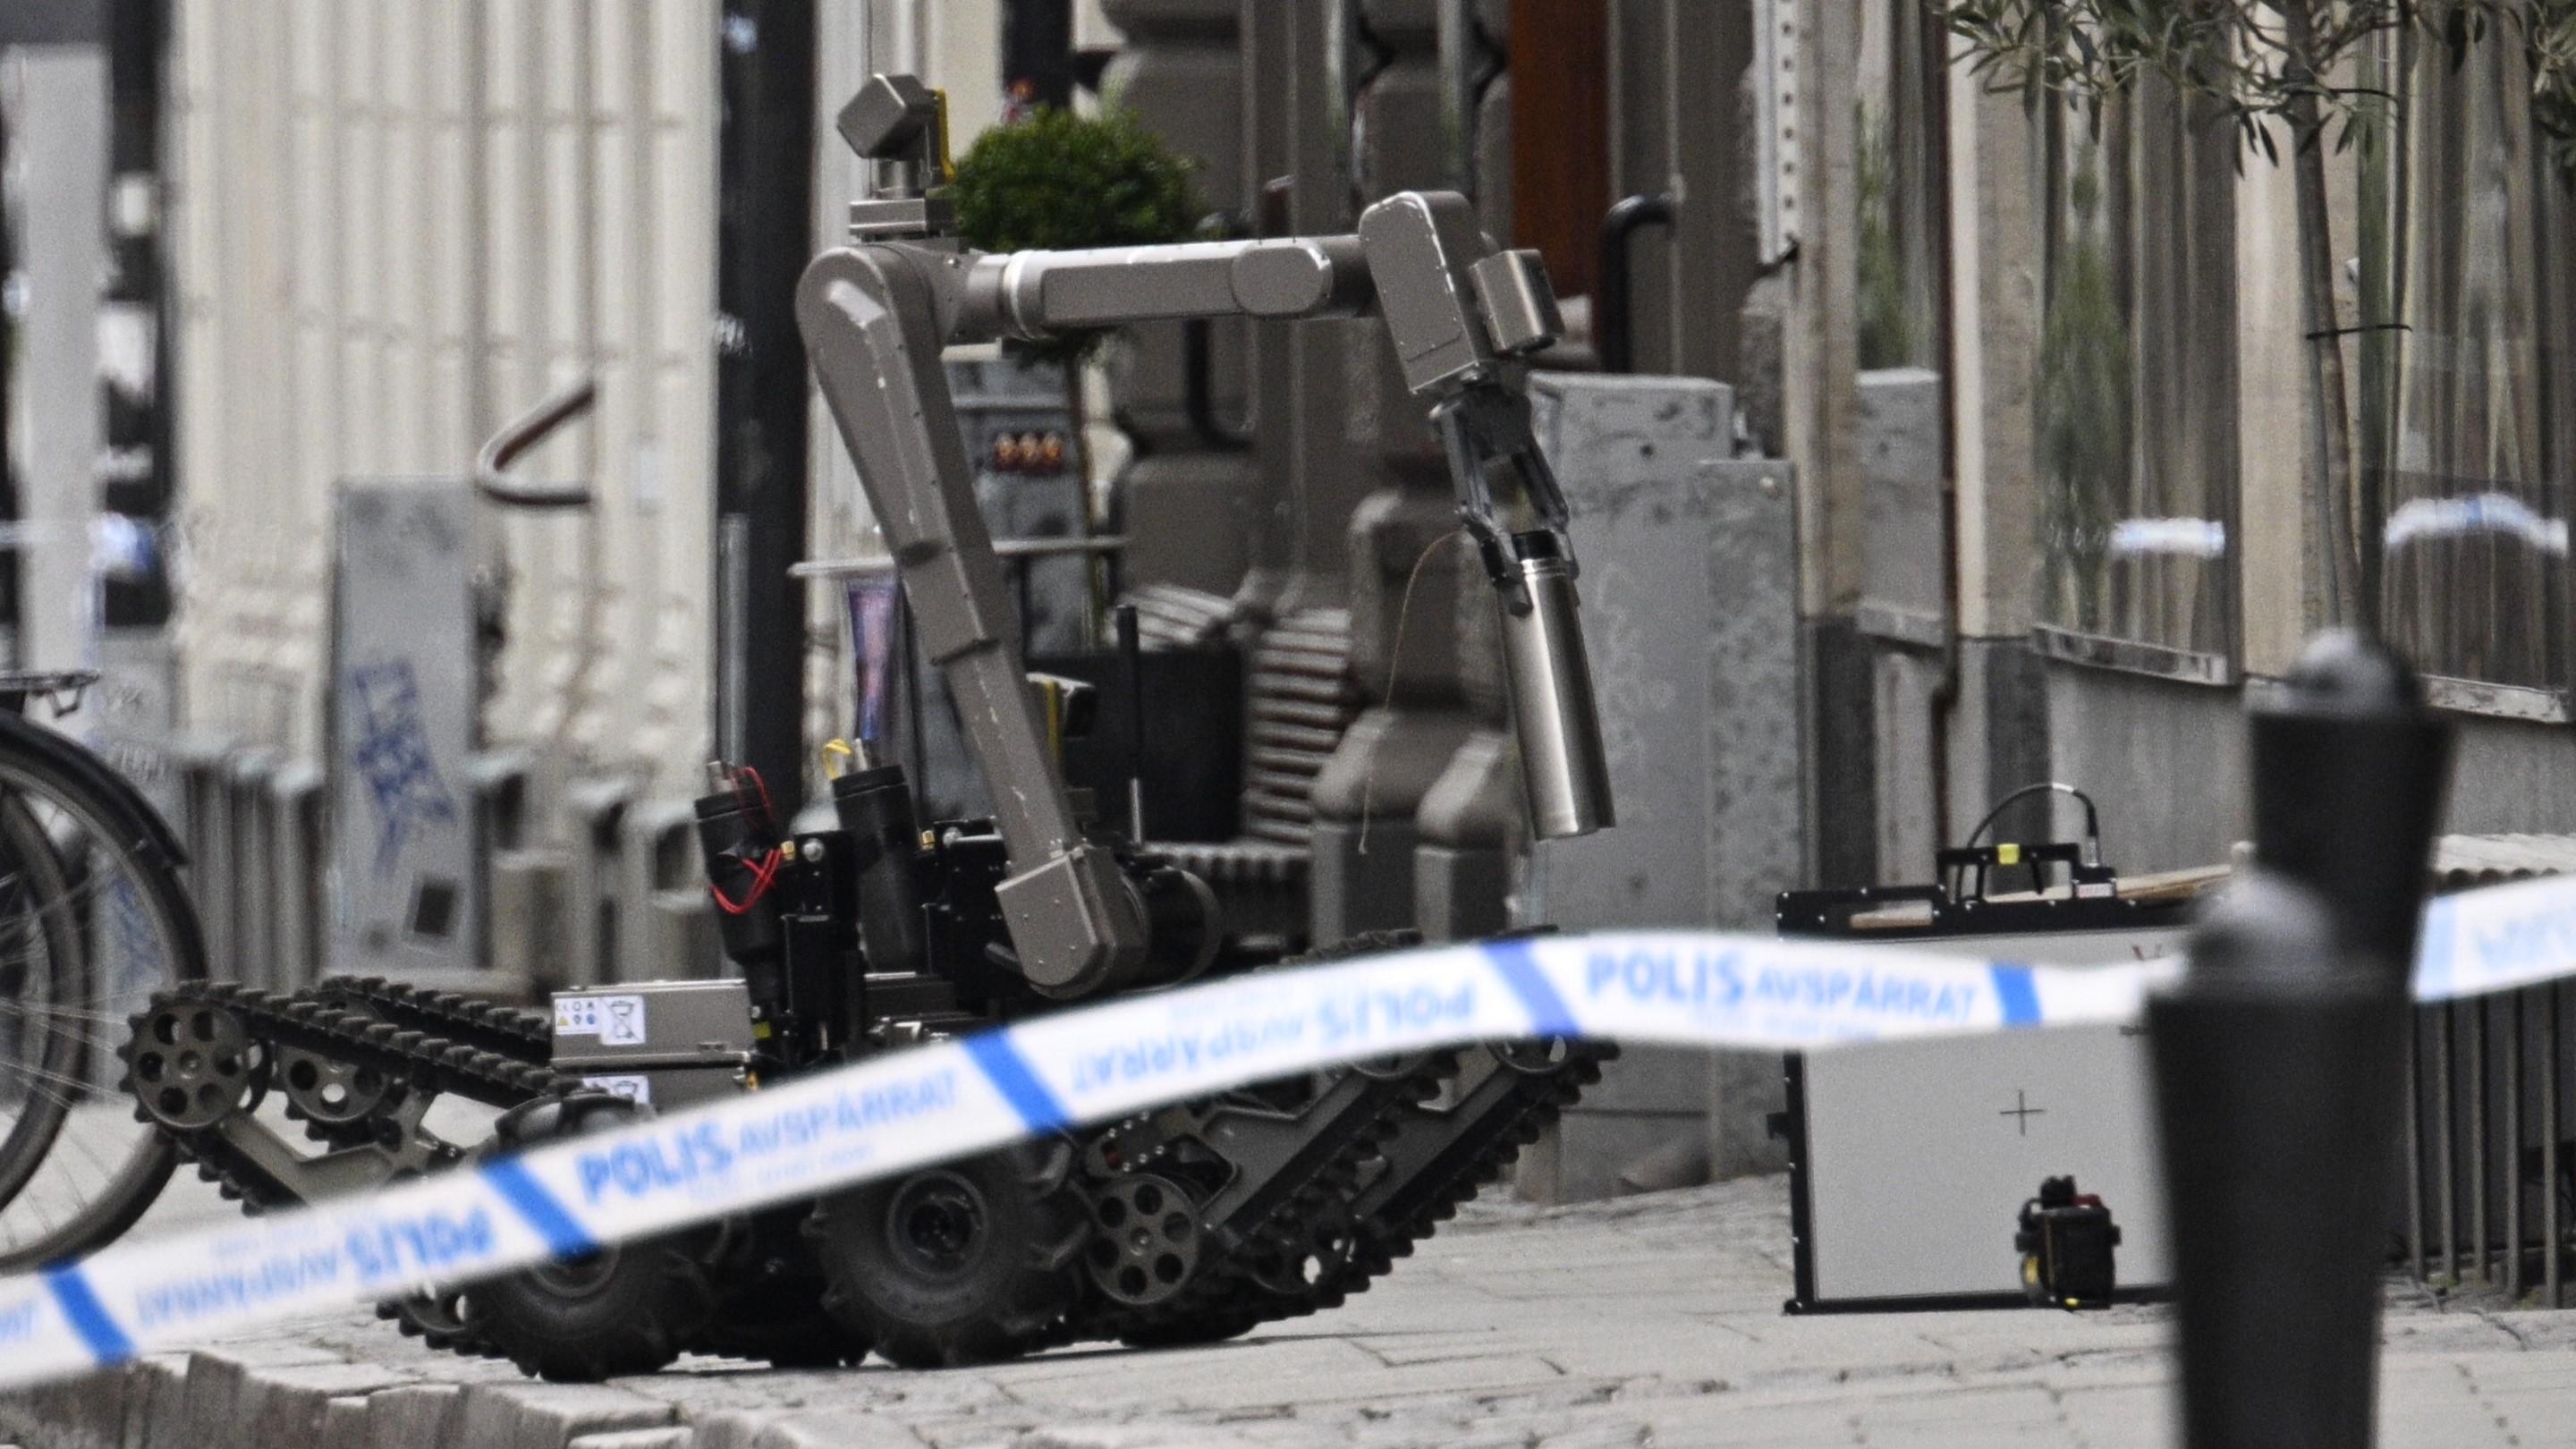 Polis och avspärrningar på Klostergatan i centrala Lund efter att ett misstänkt farligt föremål påträffats på måndagen. Foto: Johan Nilsson/TT